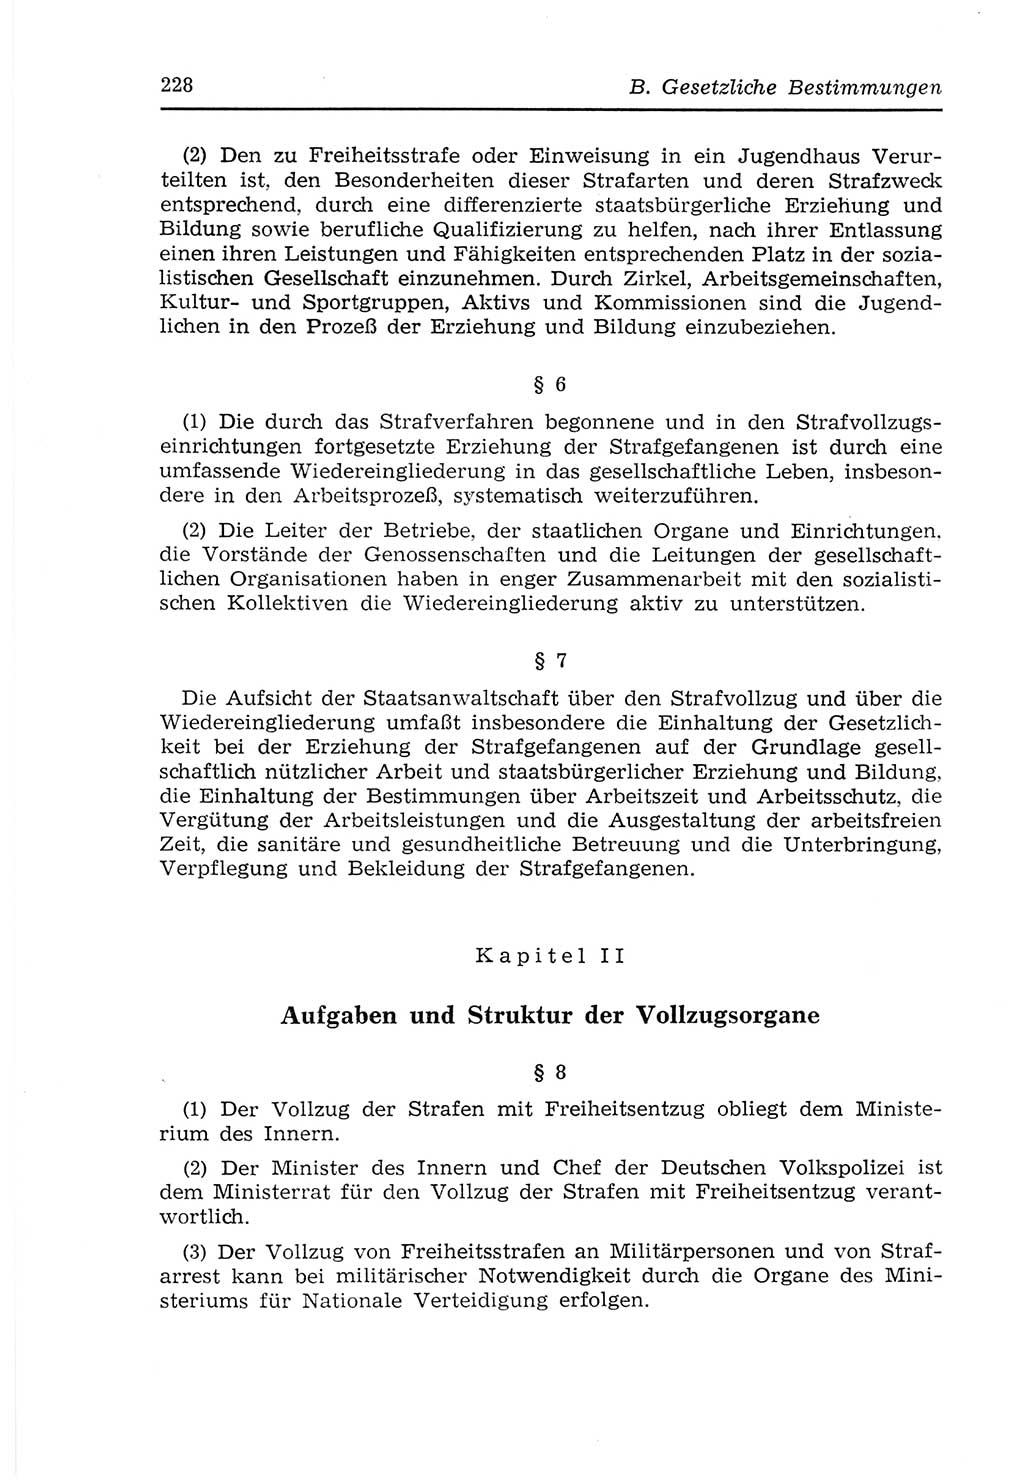 Strafvollzugs- und Wiedereingliederungsgesetz (SVWG) der Deutschen Demokratischen Republik (DDR) 1968, Seite 228 (SVWG DDR 1968, S. 228)